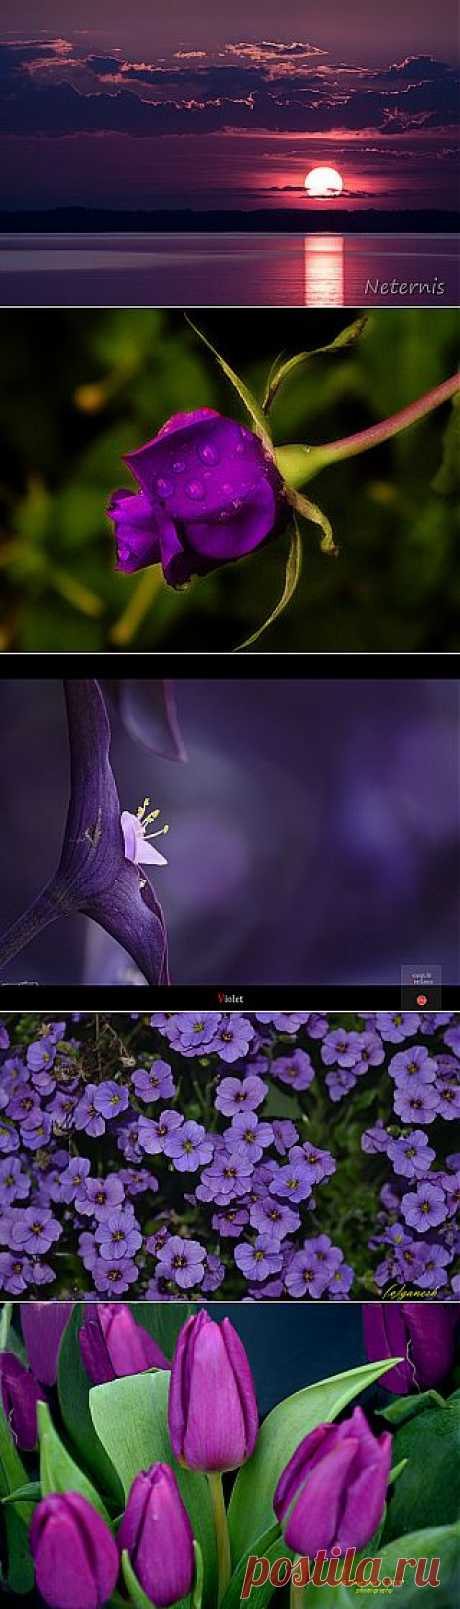 Flickr Search: violet